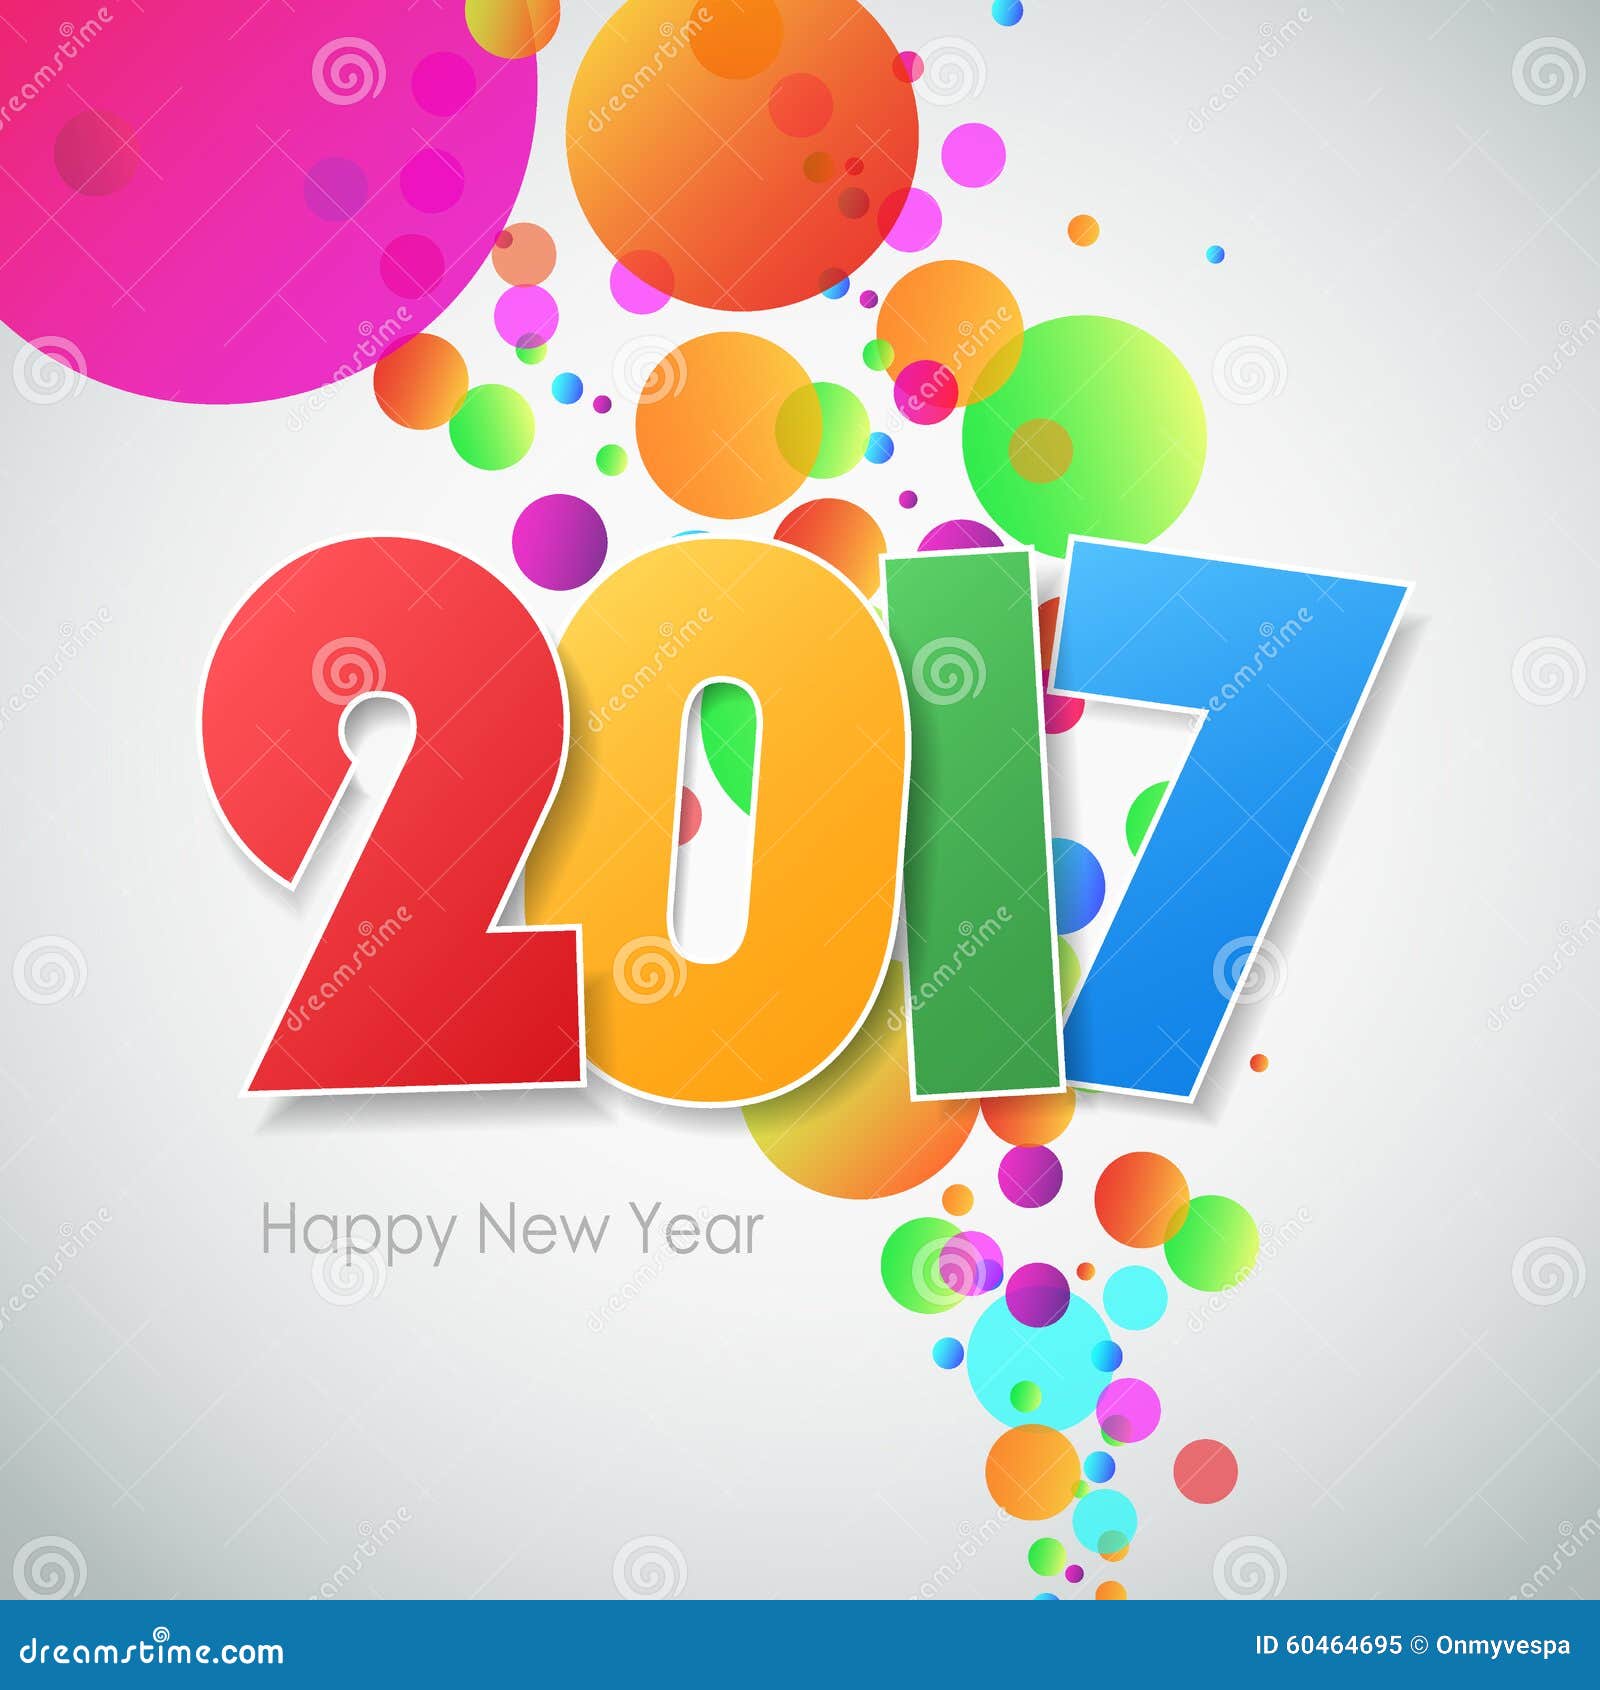 صور 2017 , صور مكتوب عليها 2017 لسنة الجديدة 2017 Happy-new-year-greeting-card-vector-illustration-eps-60464695